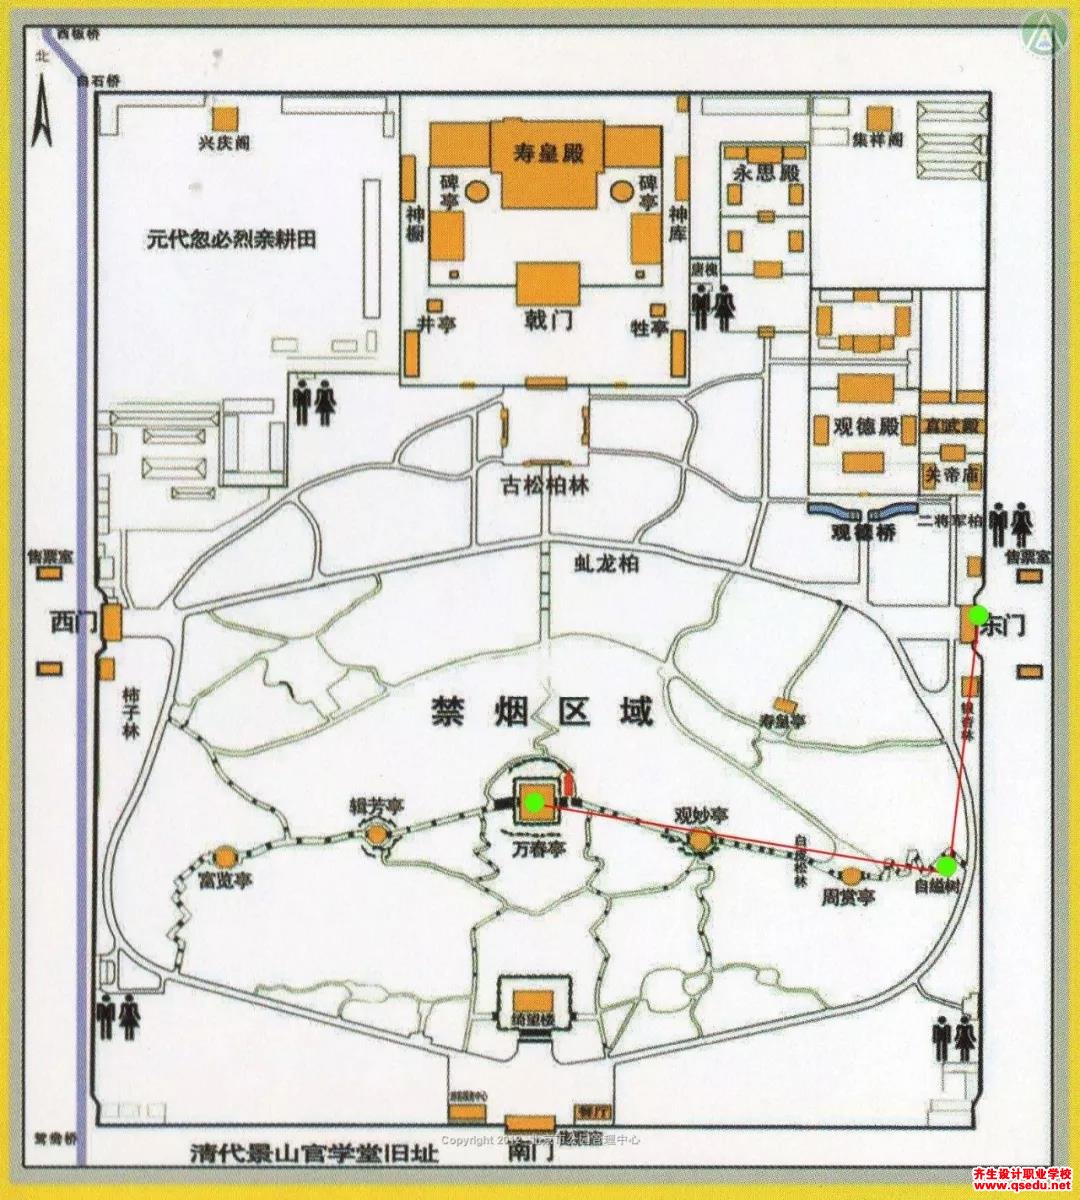 北方皇家园林平面图（故宫、圆明园、颐和园、承德避暑山庄等）